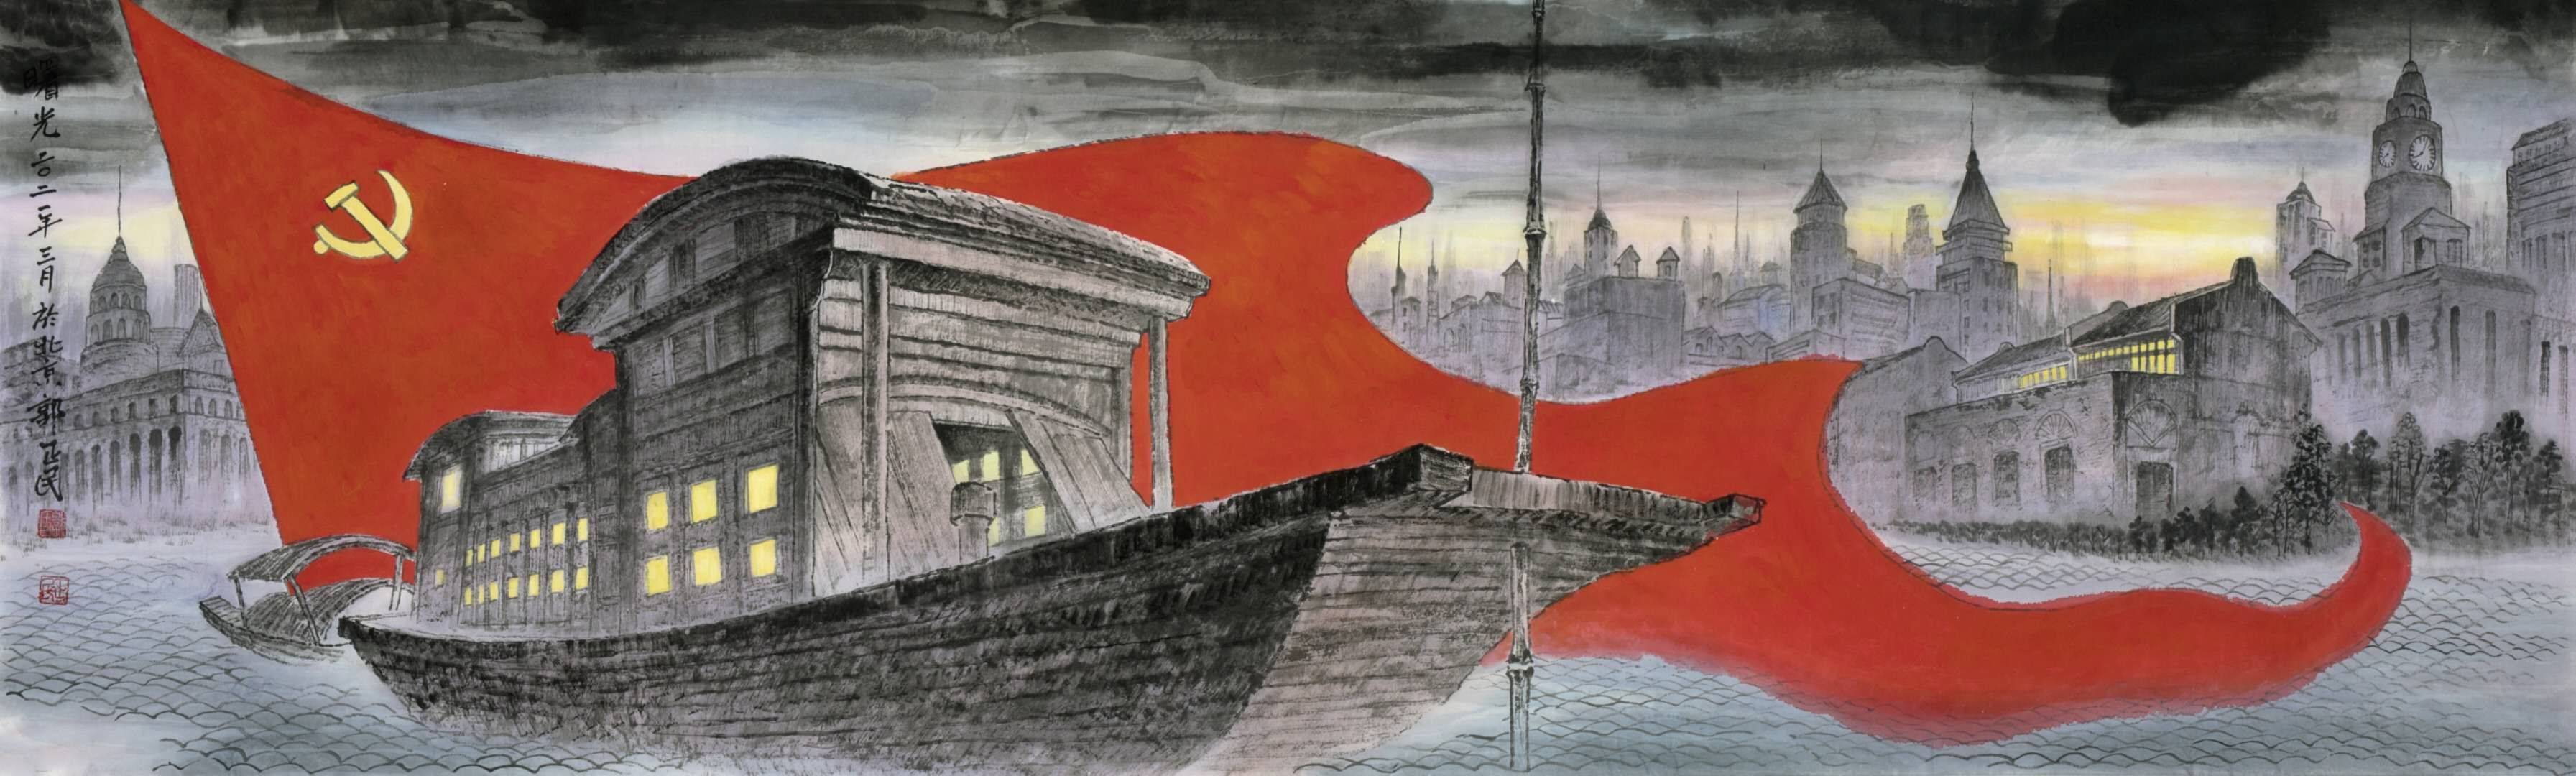 有为庆祝建党100周年献礼创作的五幅中国画精品:《红船》作者郭正民